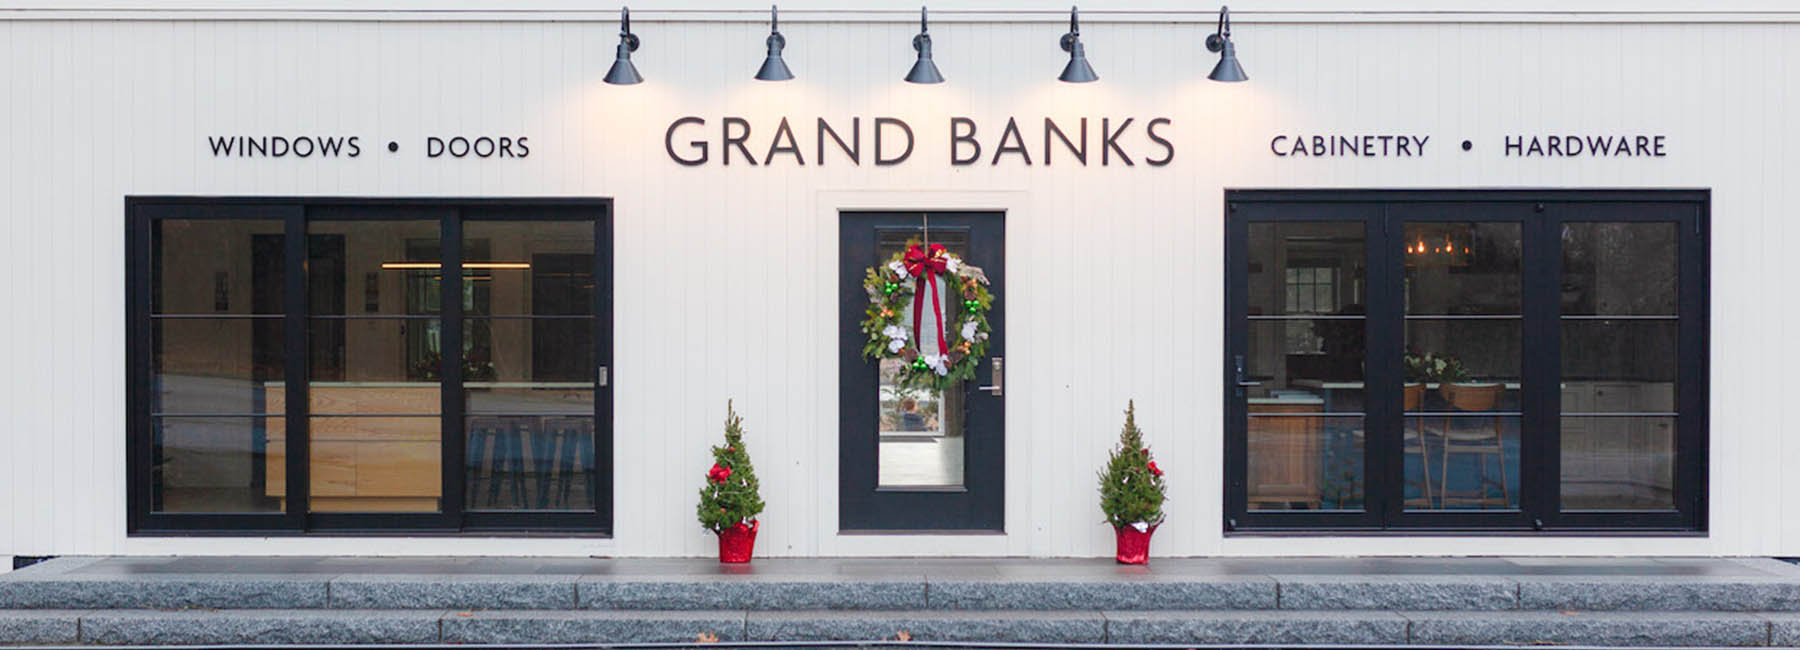 Growing Grand Banks